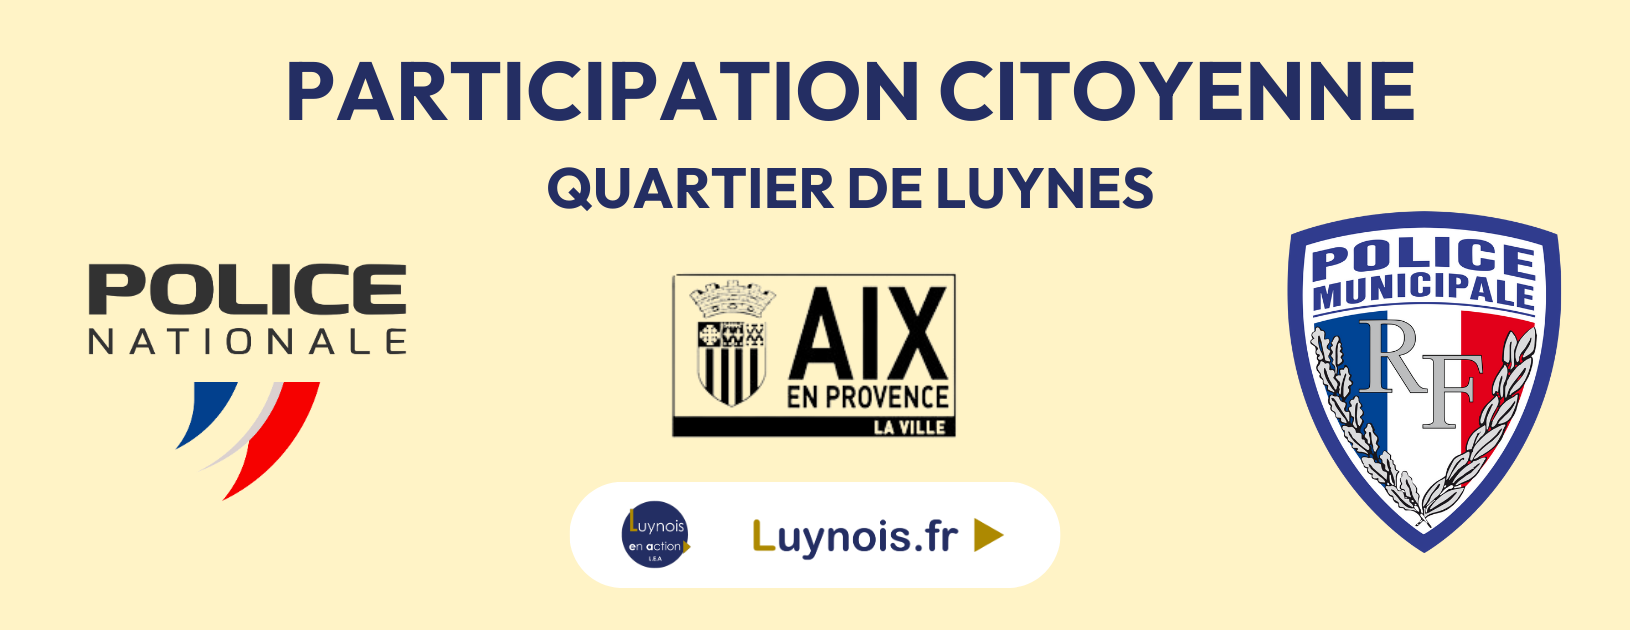 🚔 Participation citoyenne du village de Luynes